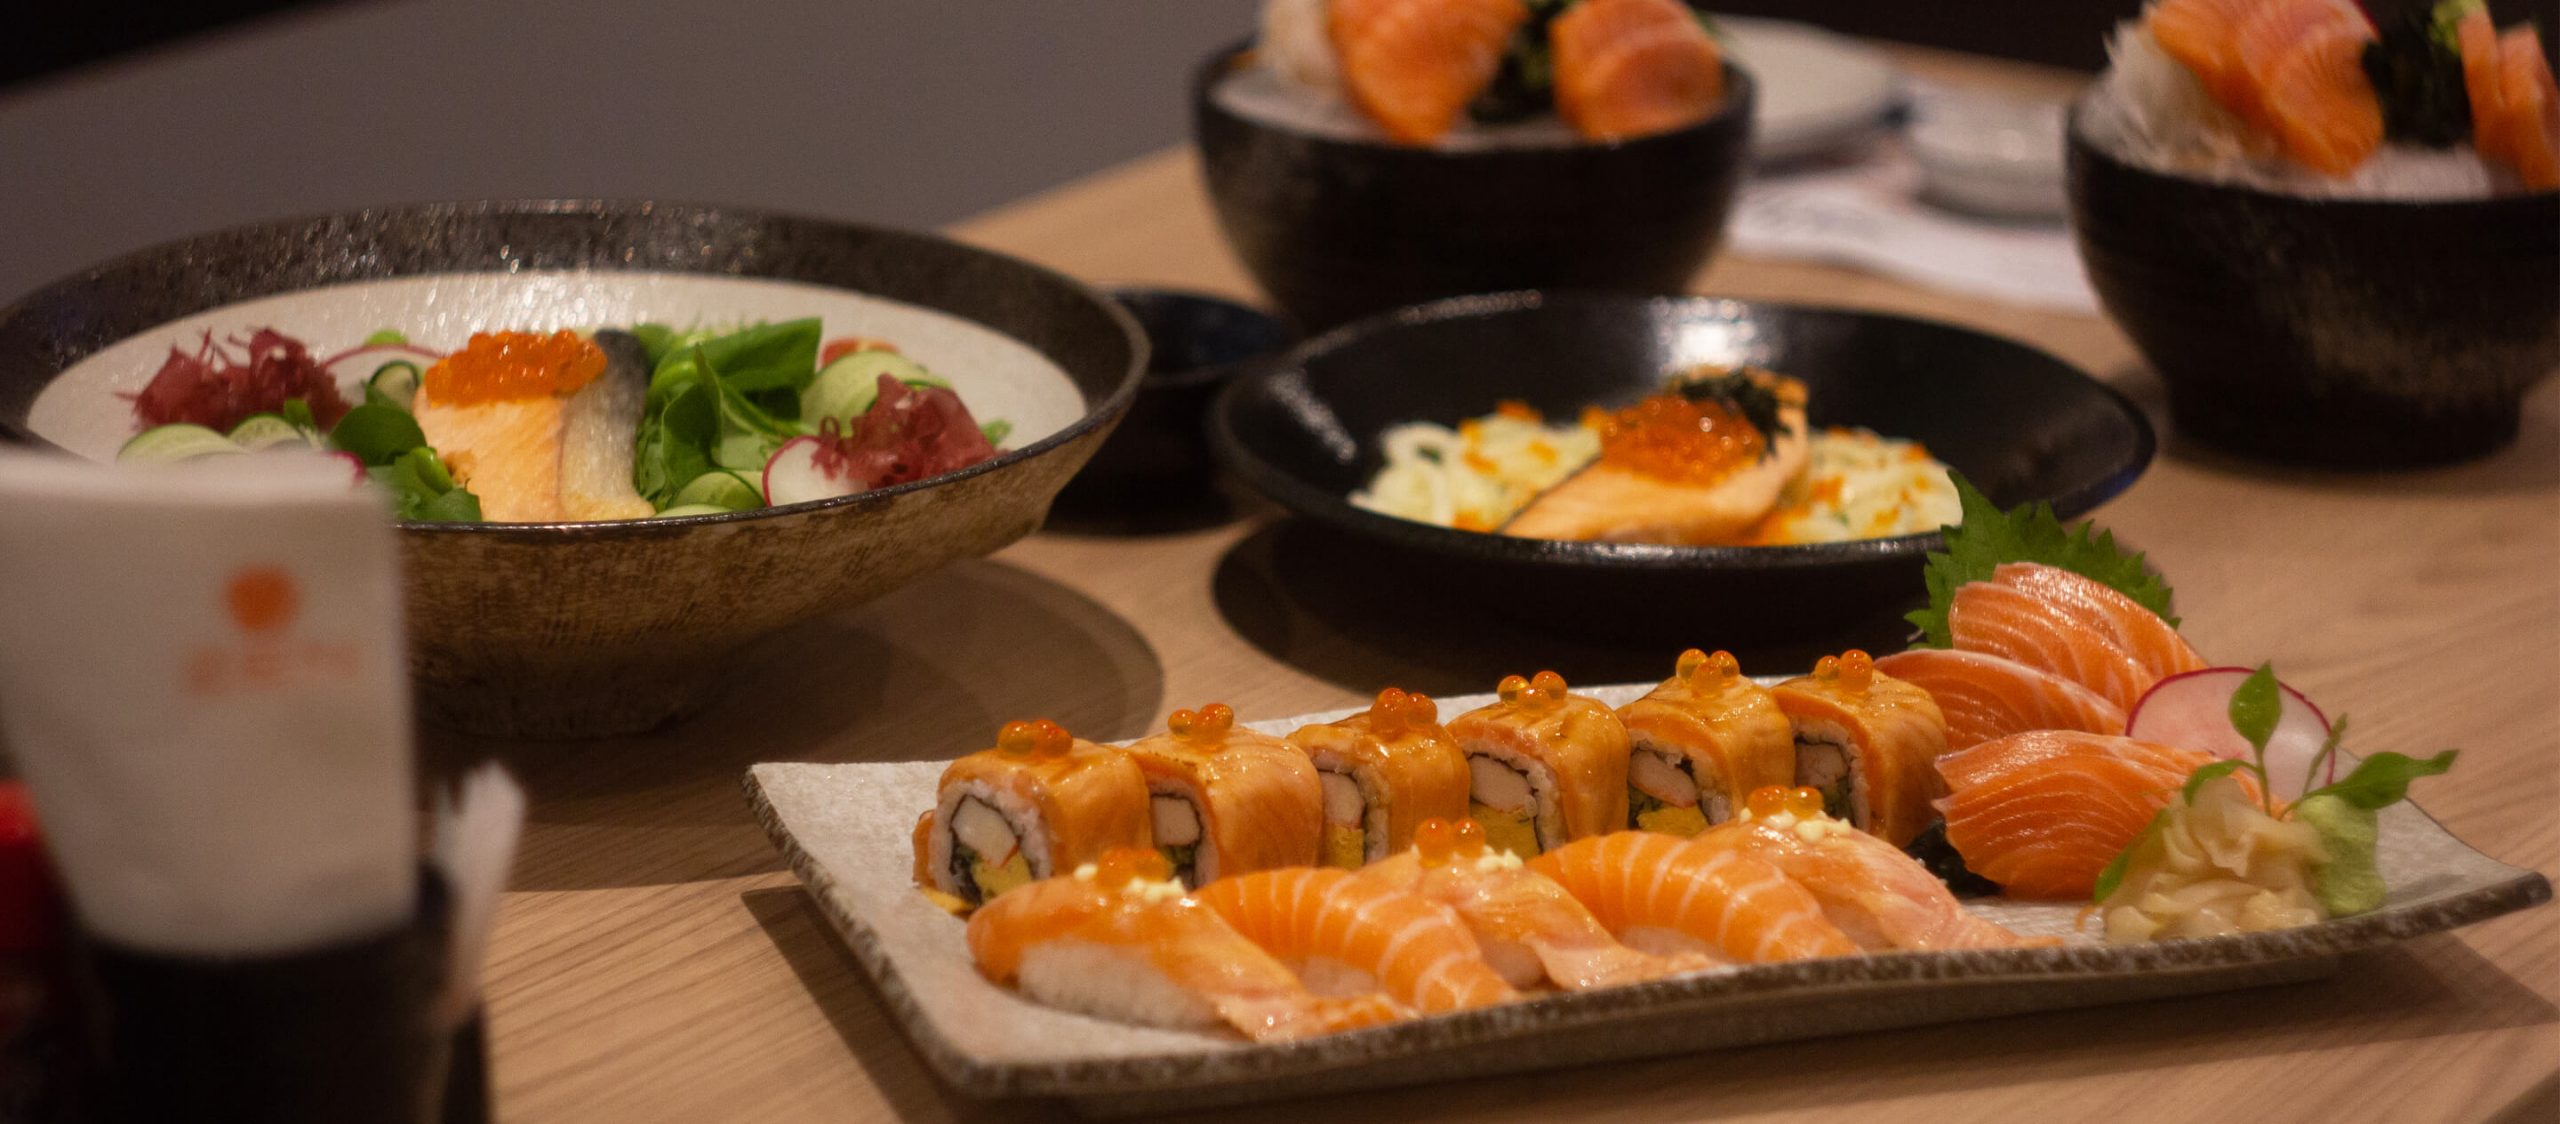 เกร็ดวัฒนธรรมที่ซ่อนอยู่ในเมนูอาหารญี่ปุ่นแบบแมสๆ